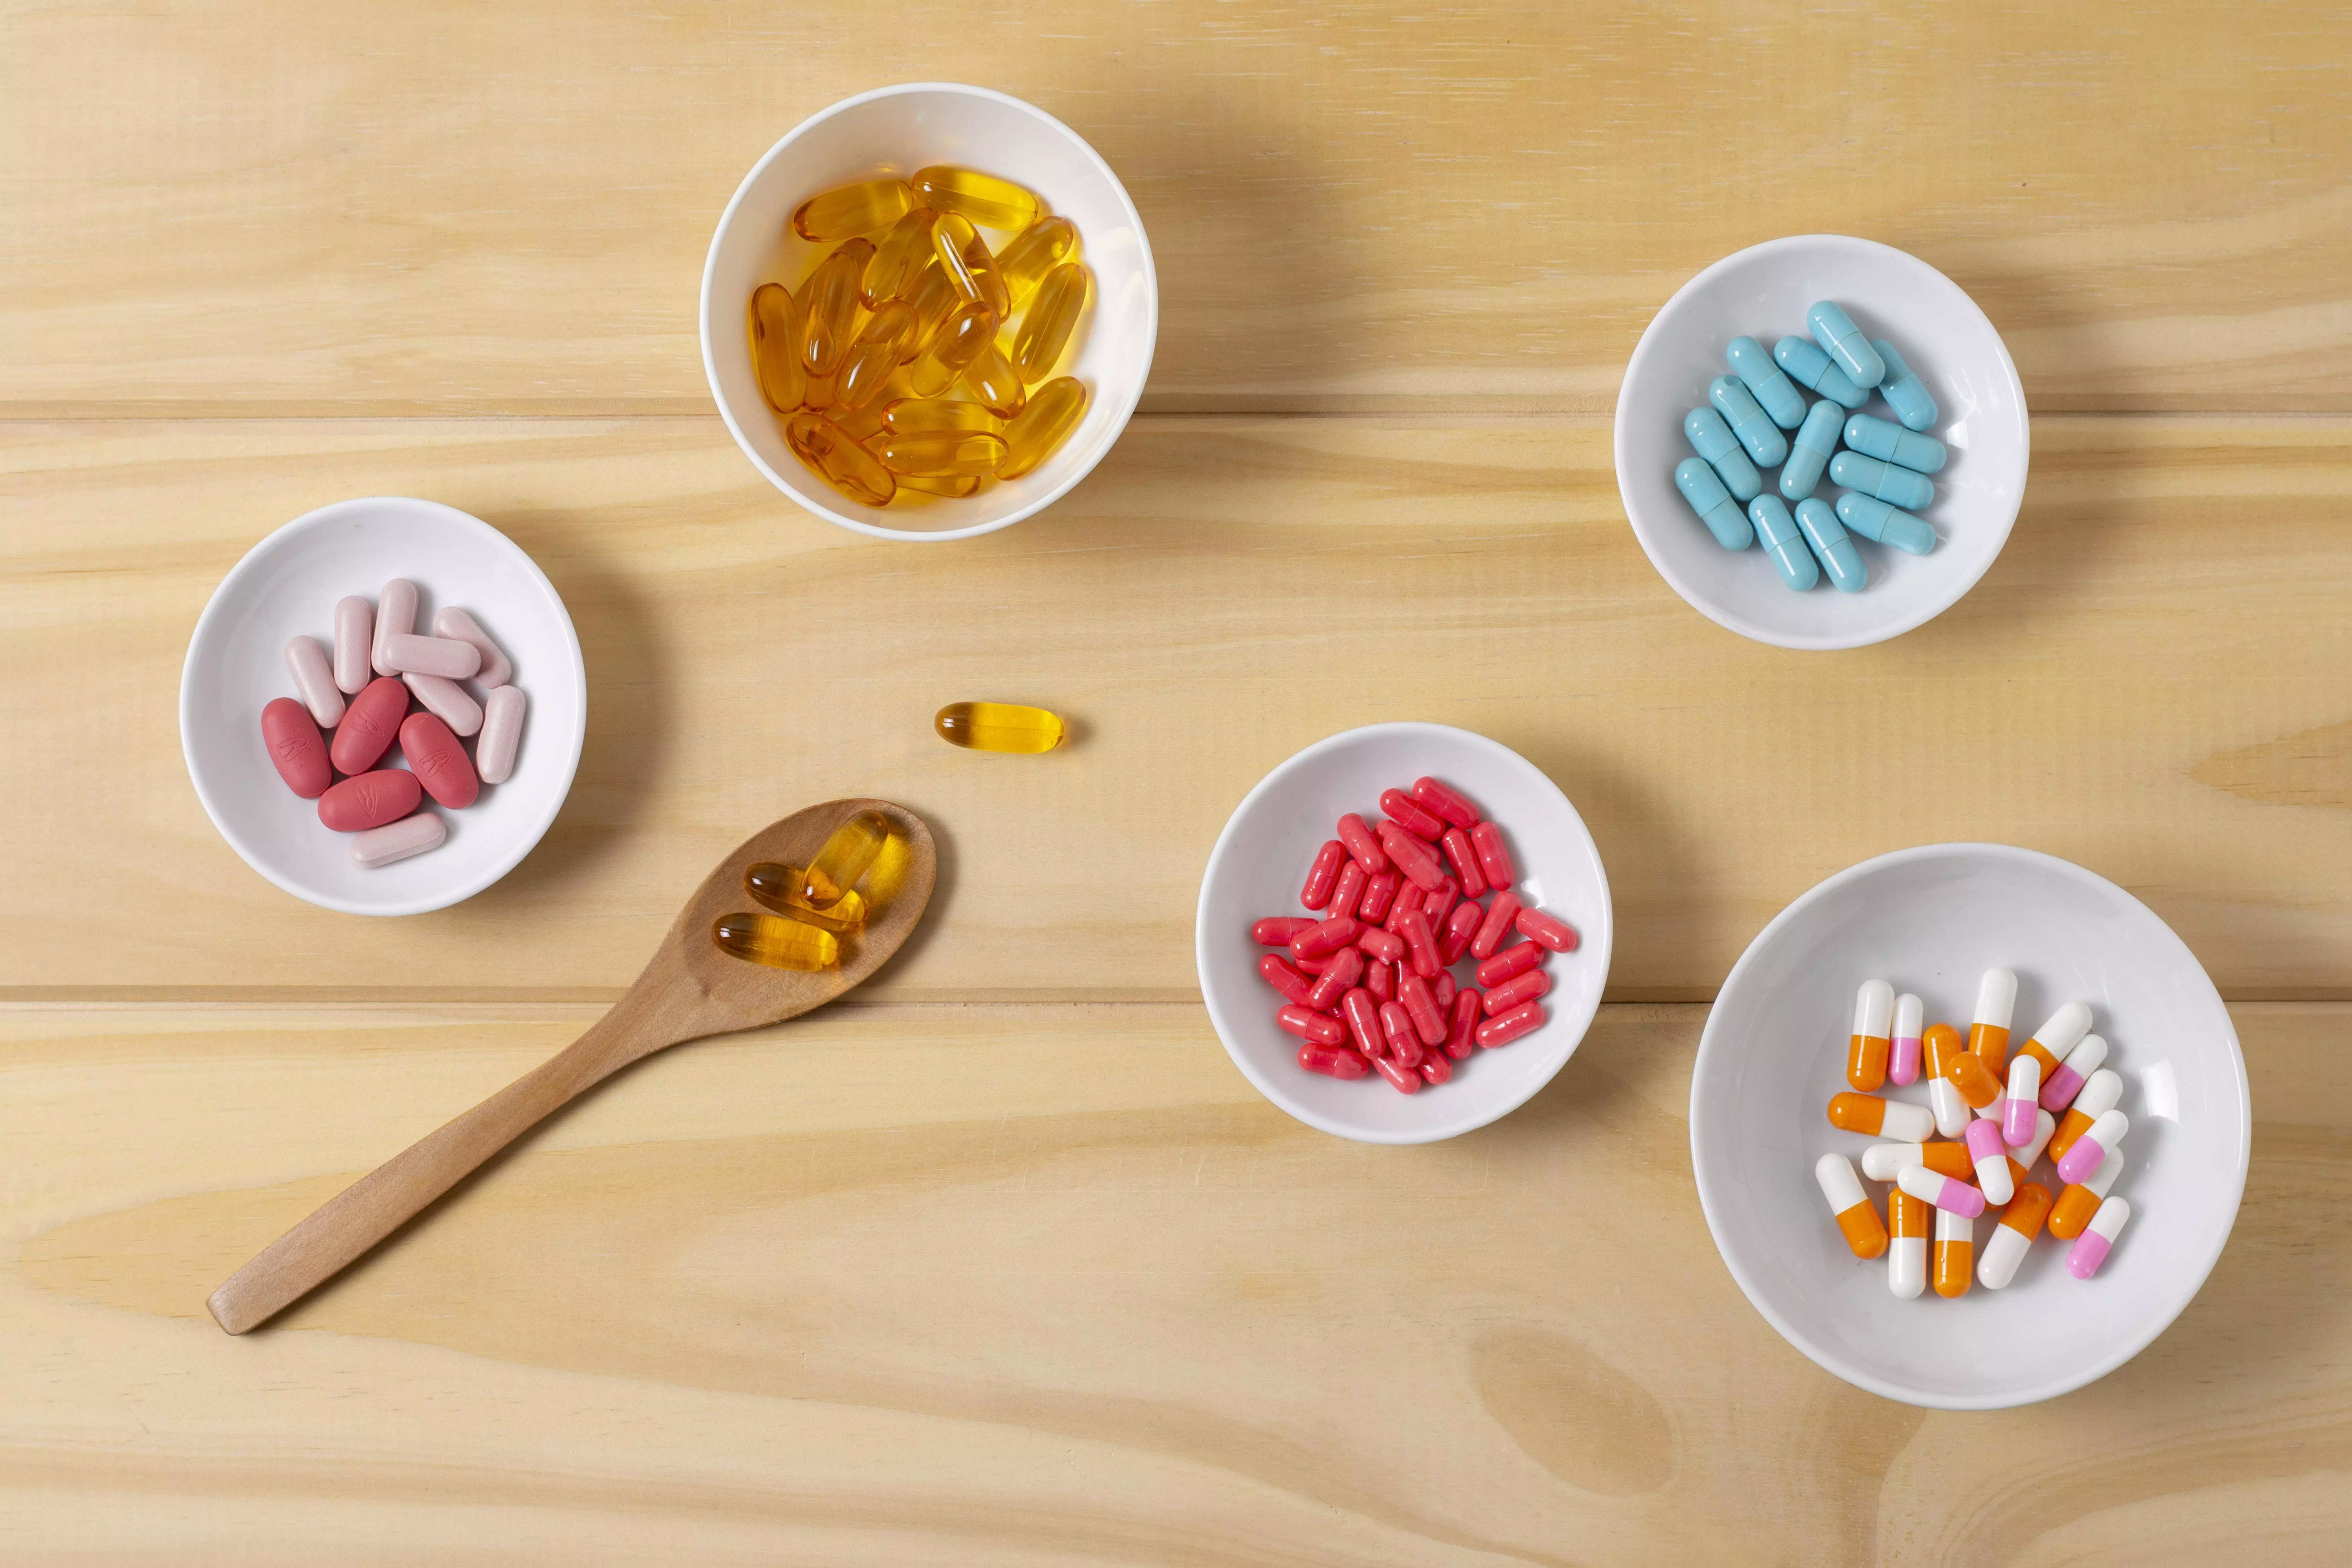 Sale of Antibiotics Without Prescriptions is Punishable: DCA